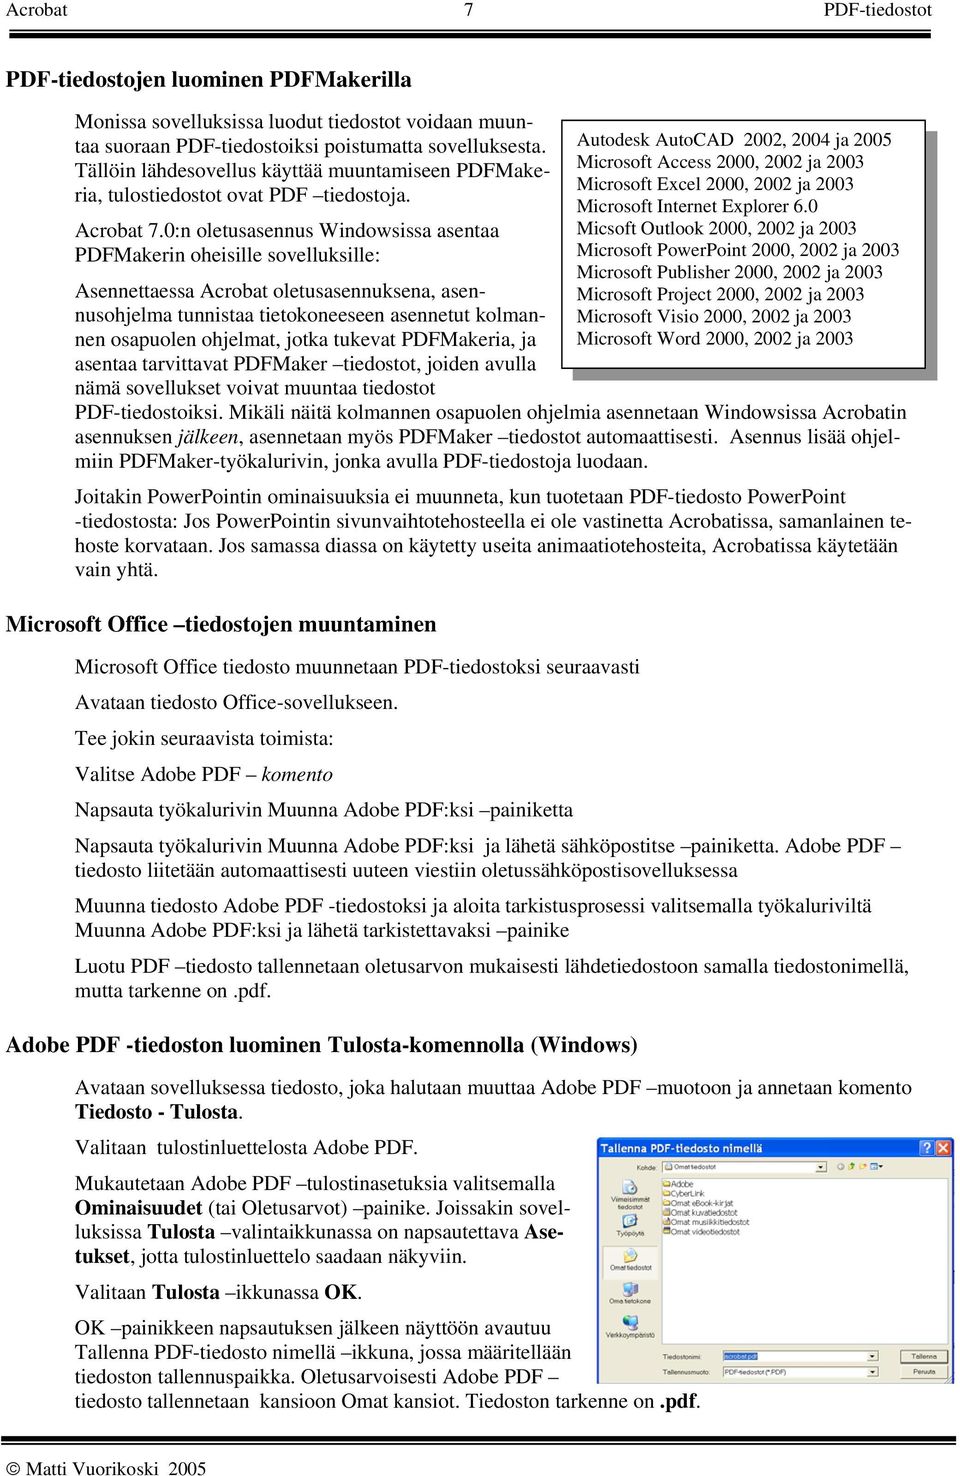 0:n oletusasennus Windowsissa asentaa PDFMakerin oheisille sovelluksille: Asennettaessa Acrobat oletusasennuksena, asennusohjelma tunnistaa tietokoneeseen asennetut kolmannen osapuolen ohjelmat,